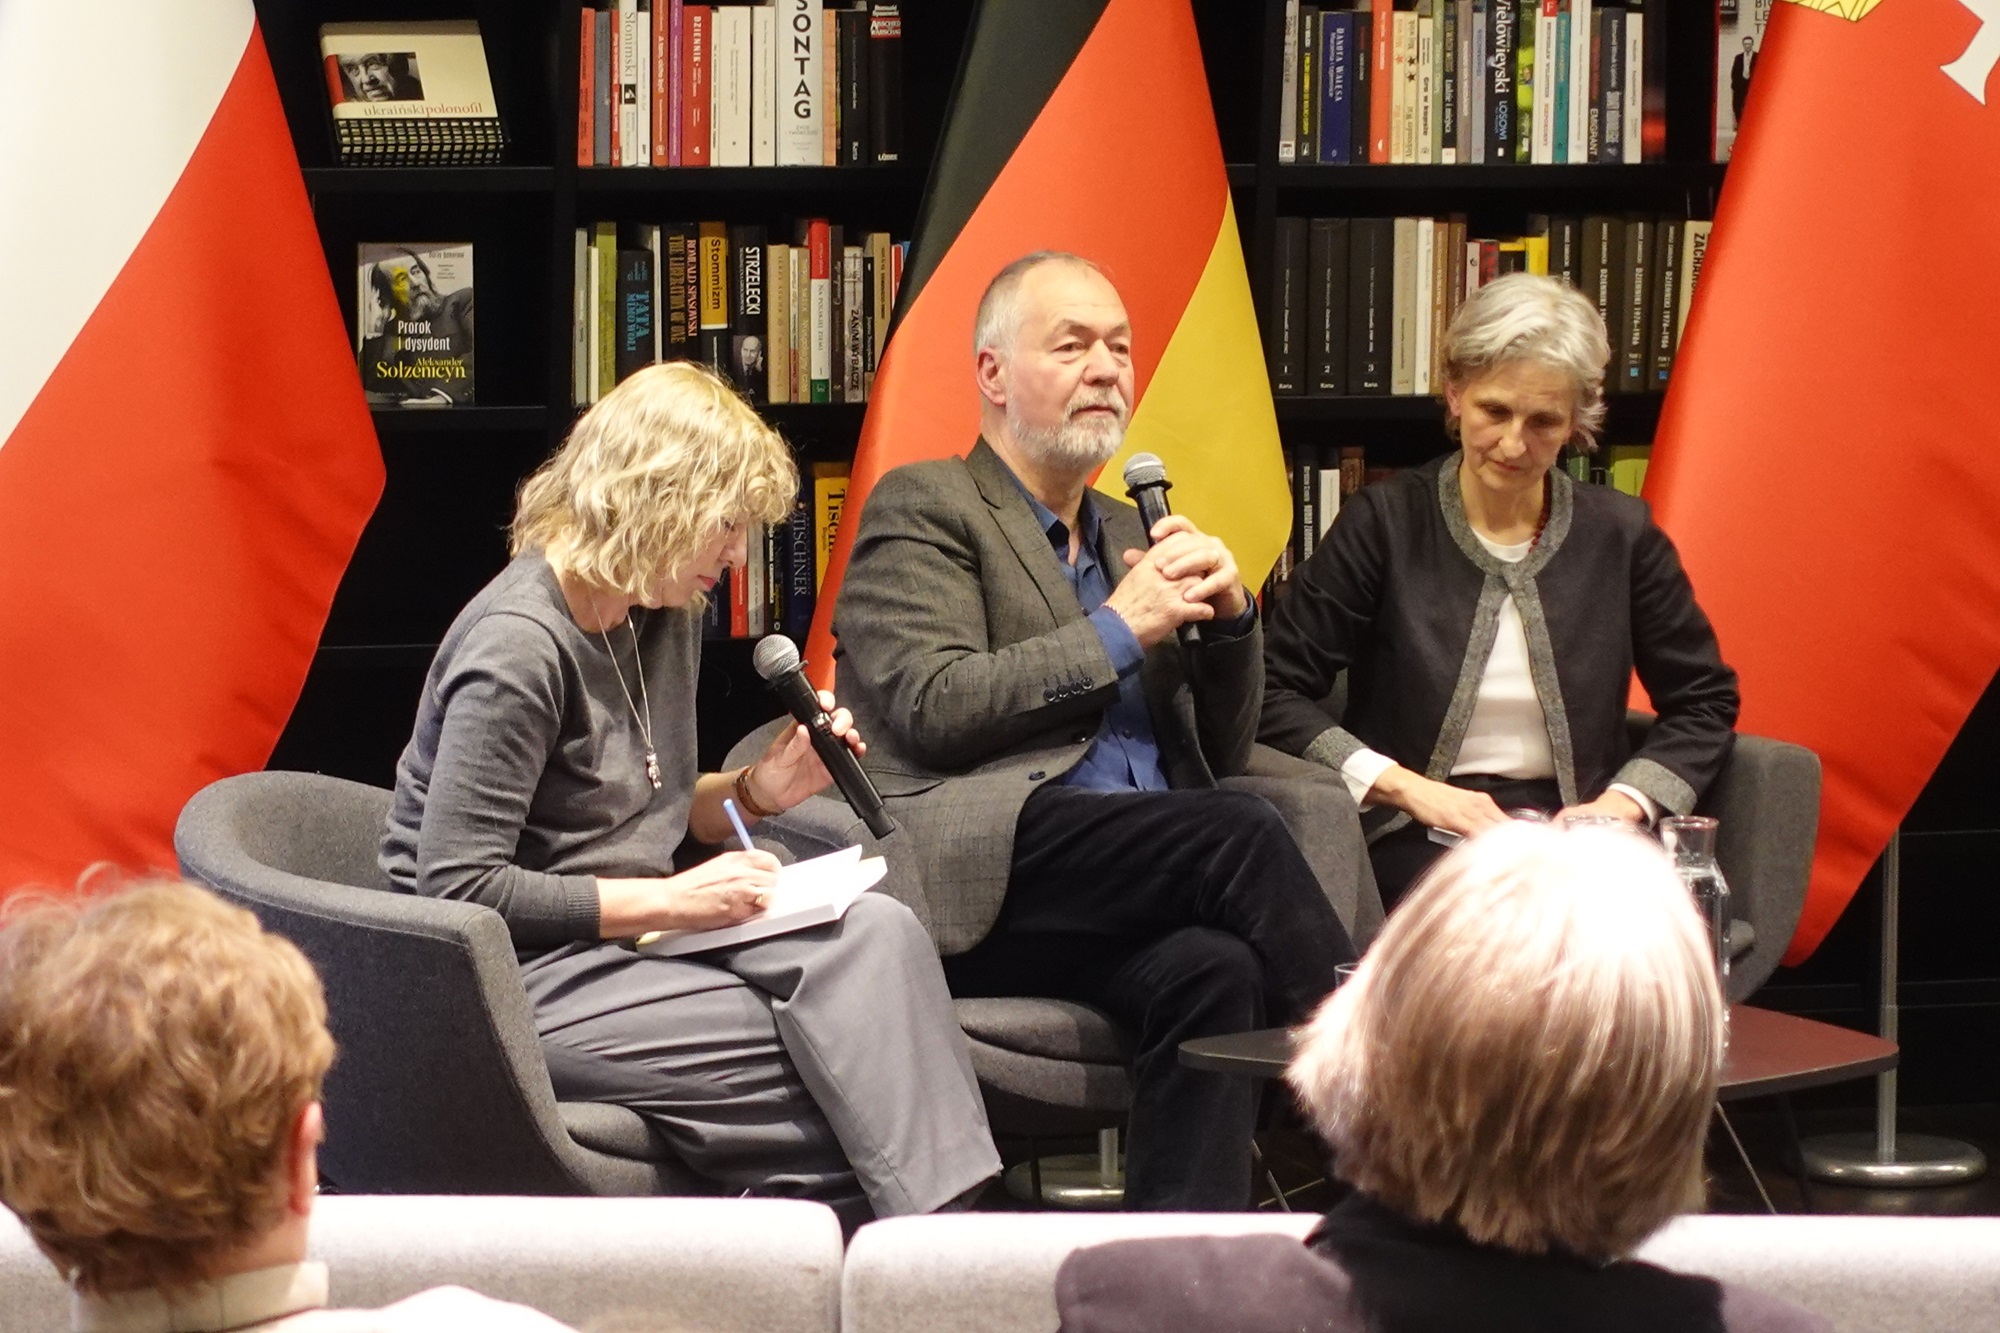 Markus Meckel, hier flankiert von zwei Dolmetscherinnen, teilte seine Erinnerungen und sprach über die aktuelle Situation in Deutschland.Foto: Uwe Hahnkamp